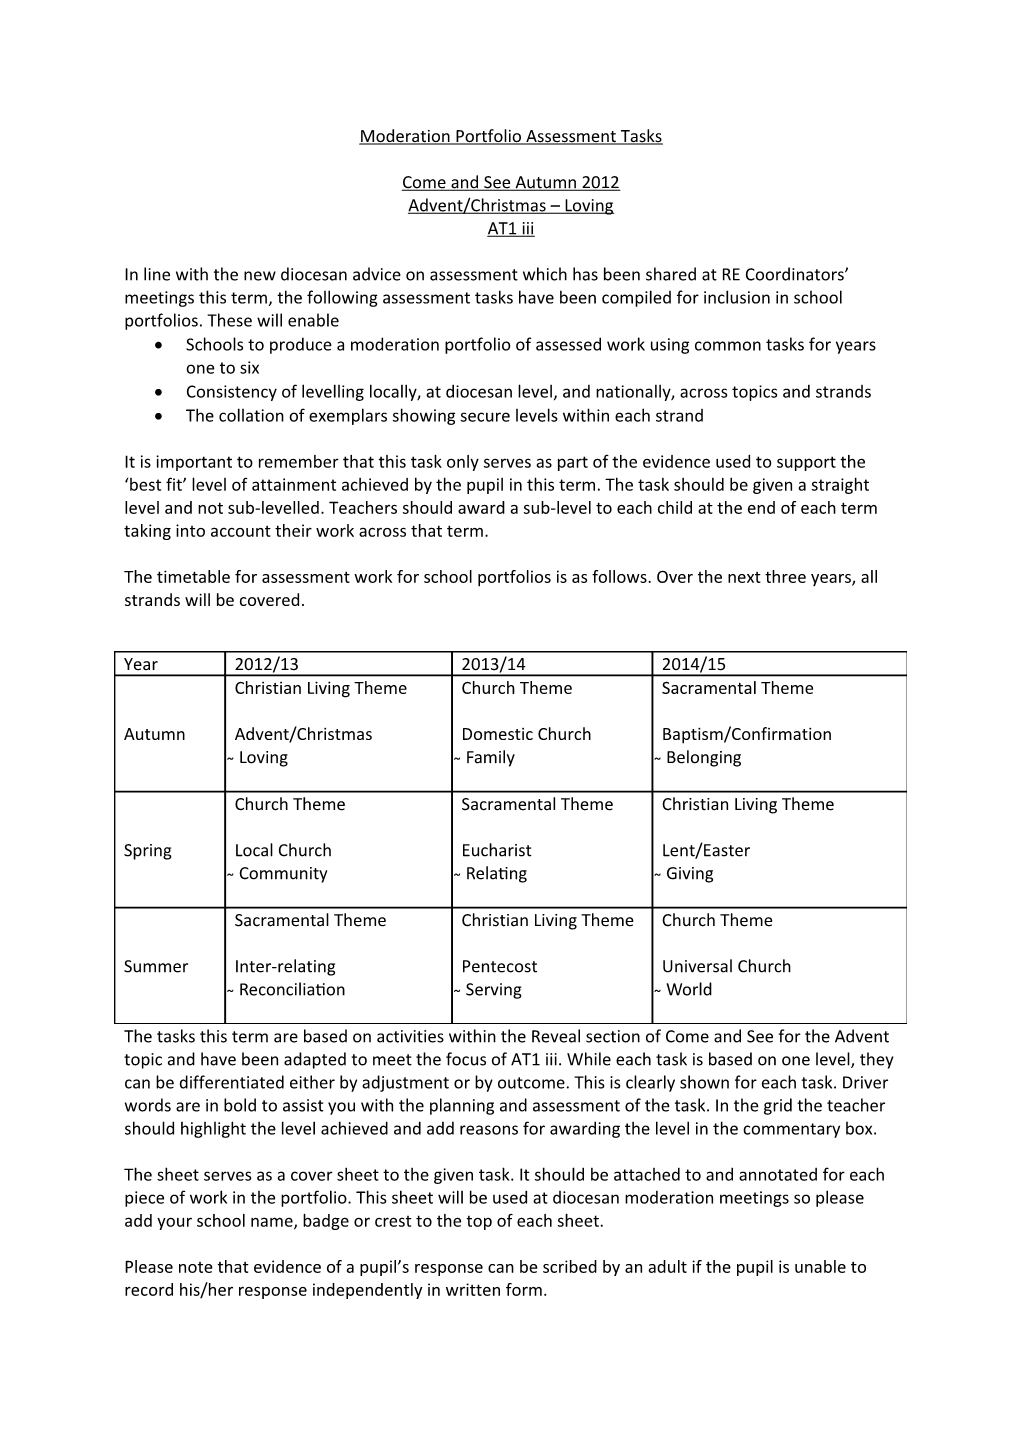 Assessment Tasks for Autumn 2011